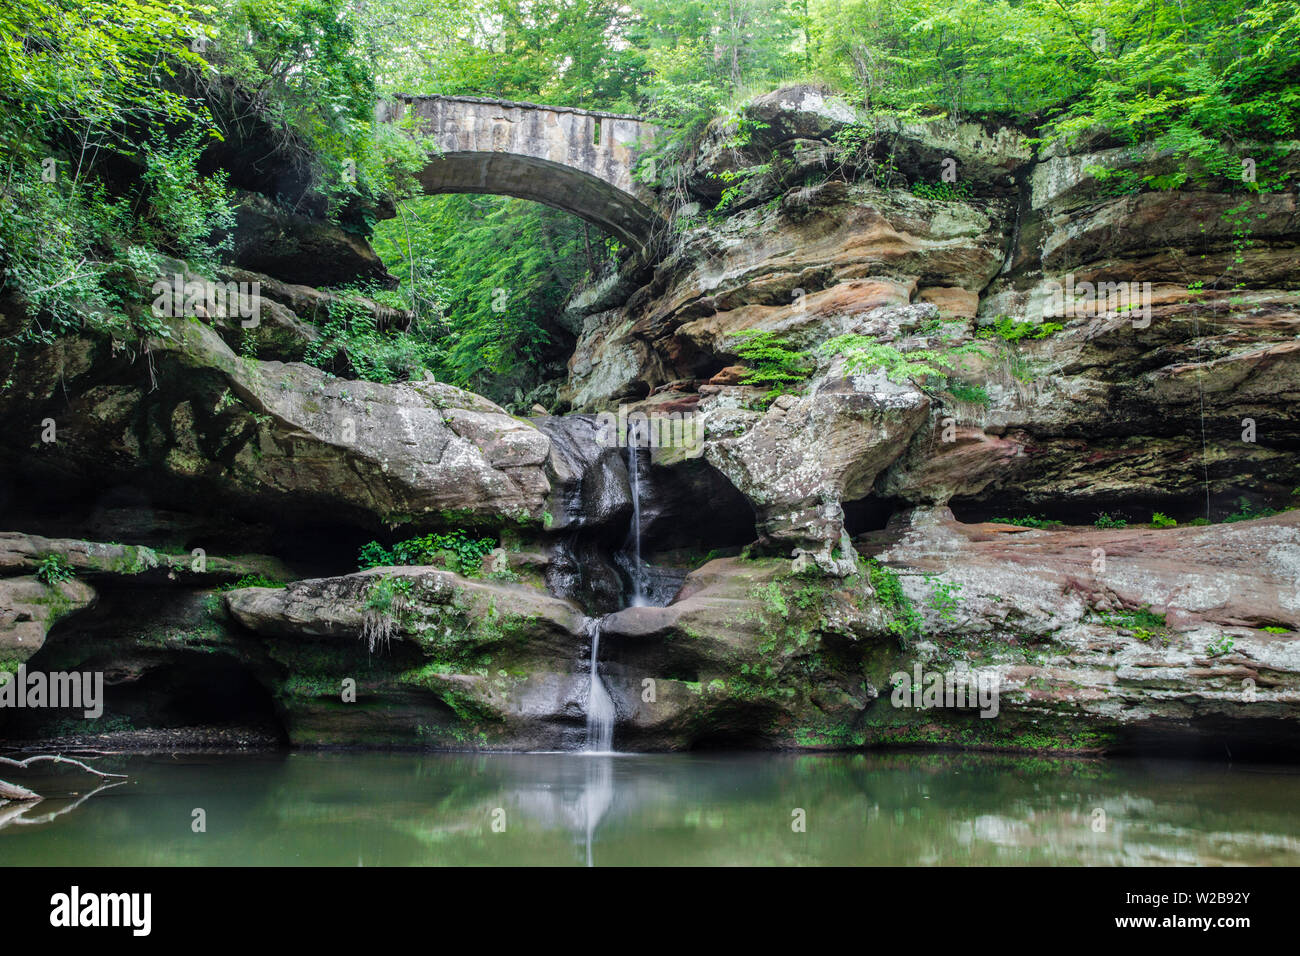 La pierre ancienne passerelle franchit un ravin avec une cascade qui se jette dans un lagon naturel. Parc d'État de Hocking Hills. Logan, dans l'Ohio. Banque D'Images